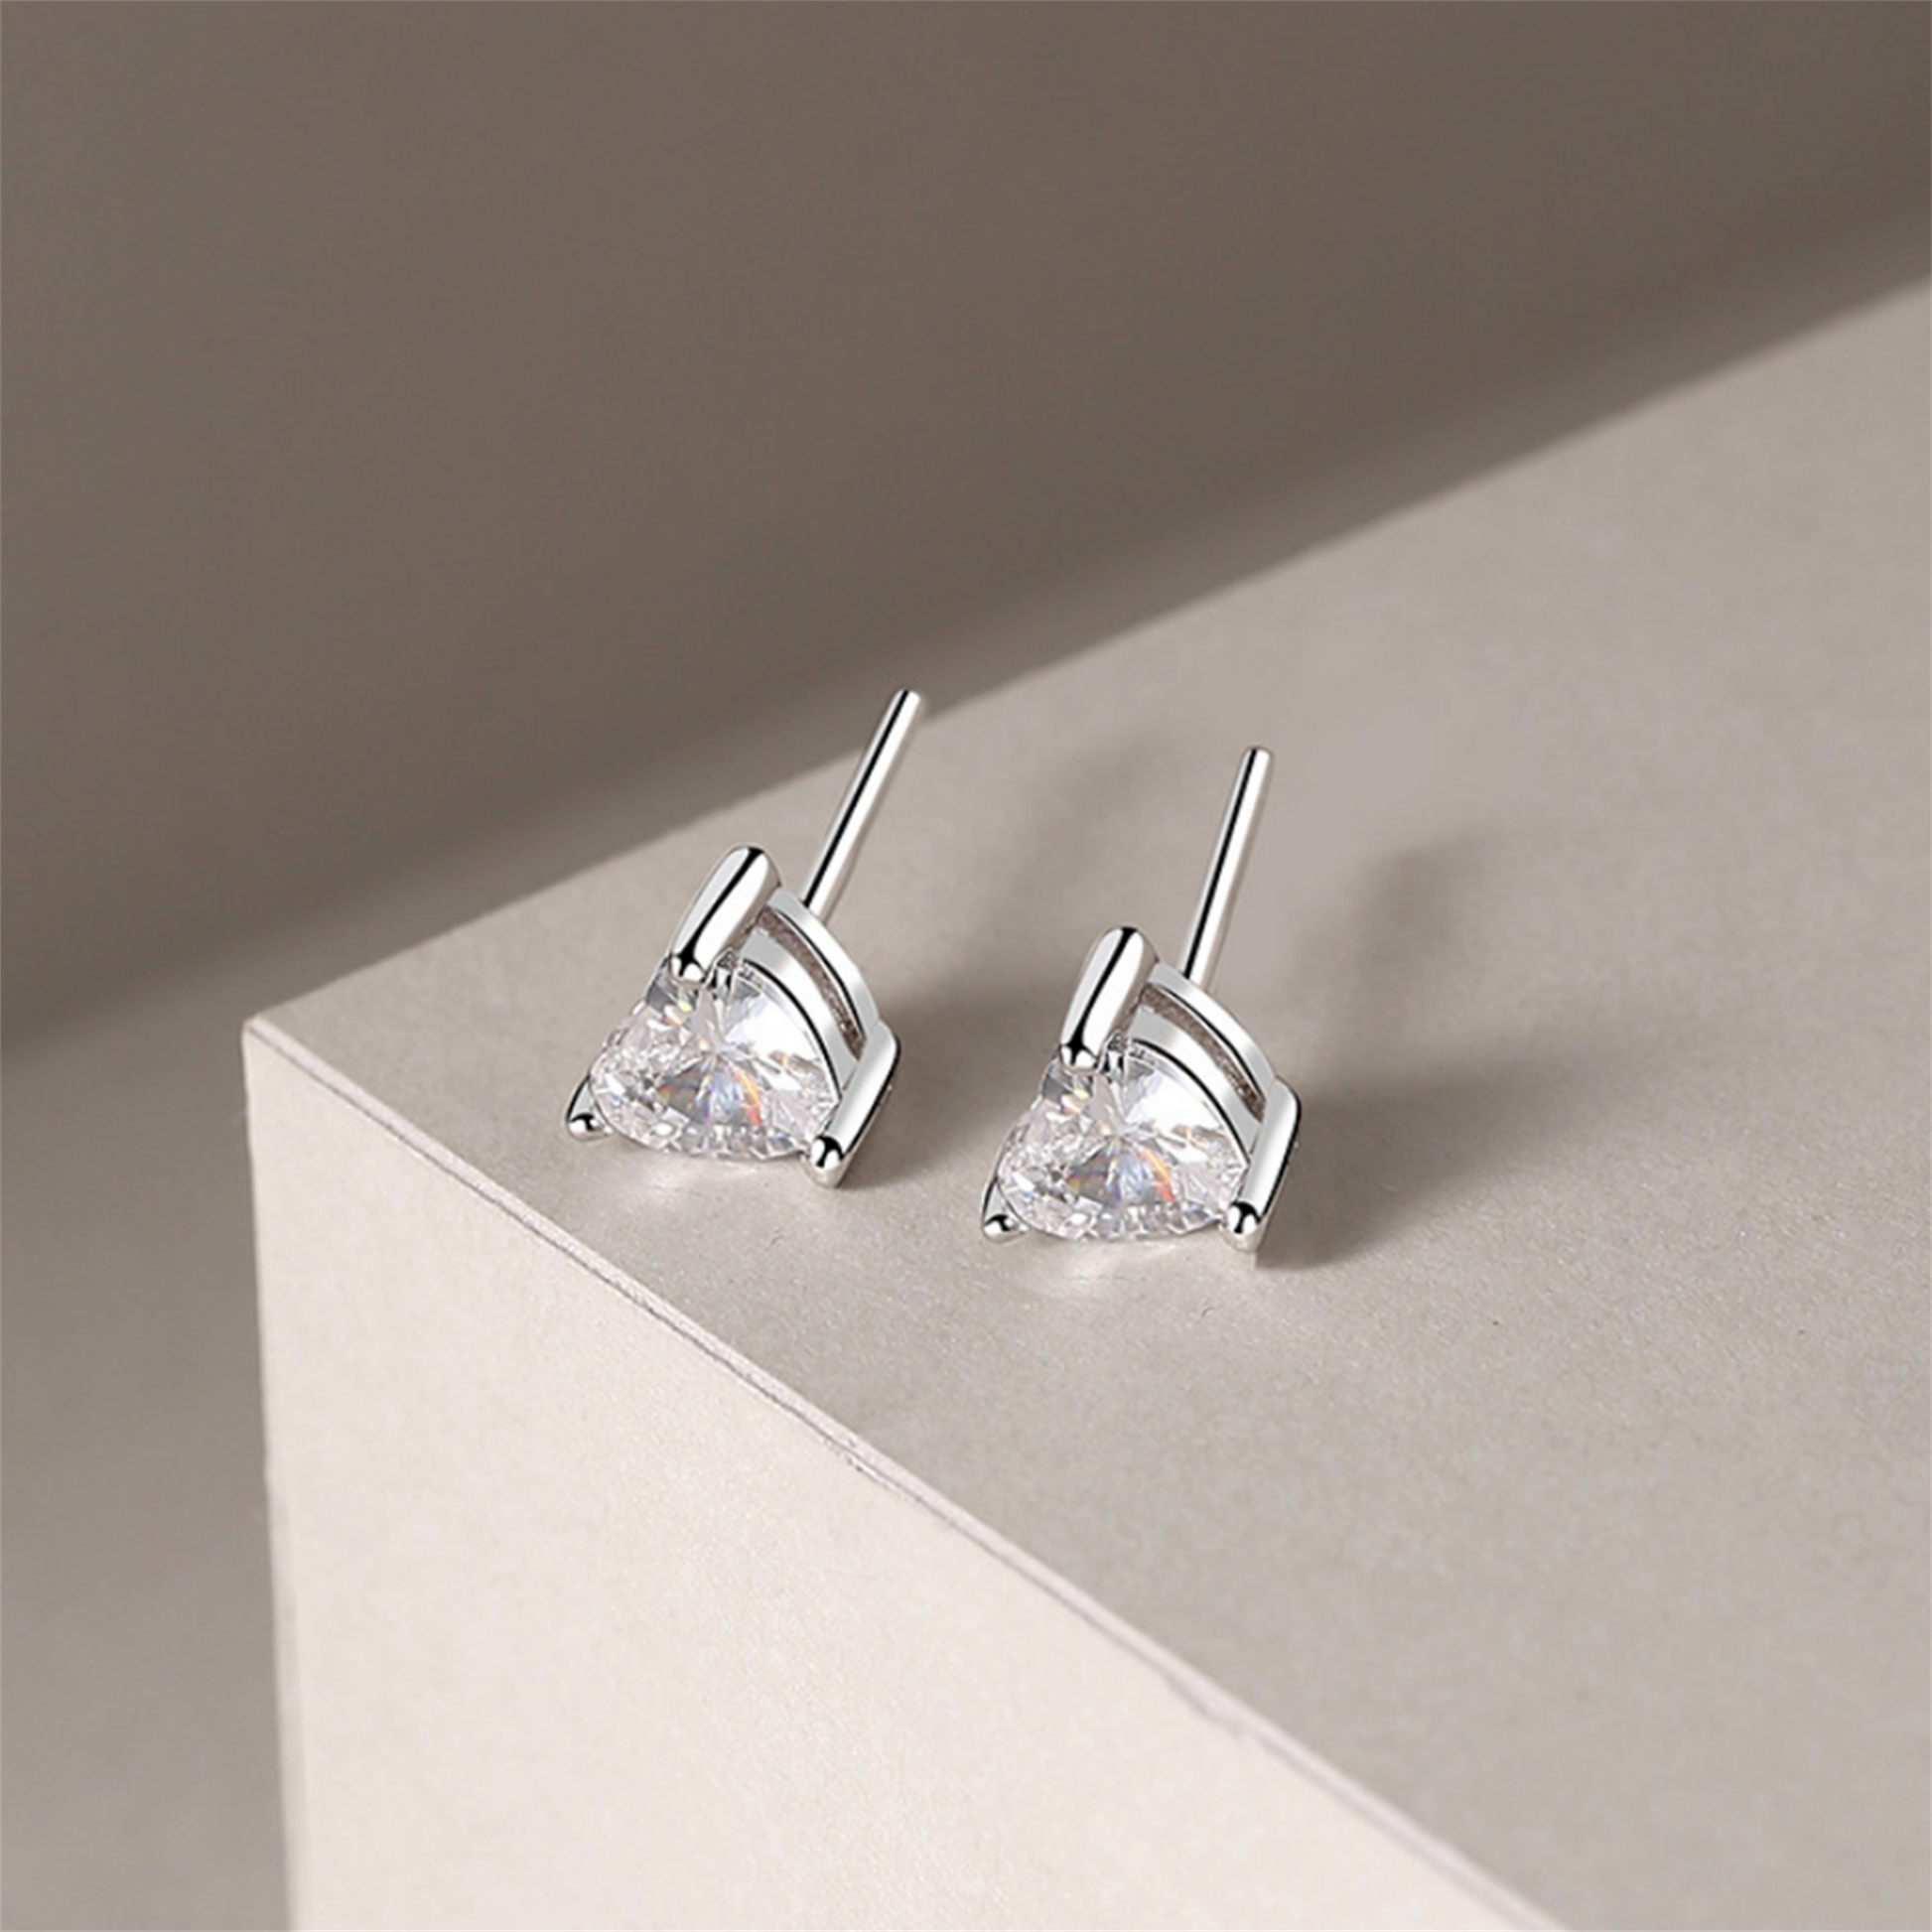 Sterling Silver 5mm Clear Cut Heart Shaped CZ Stud Earrings Jewellery - sugarkittenlondon